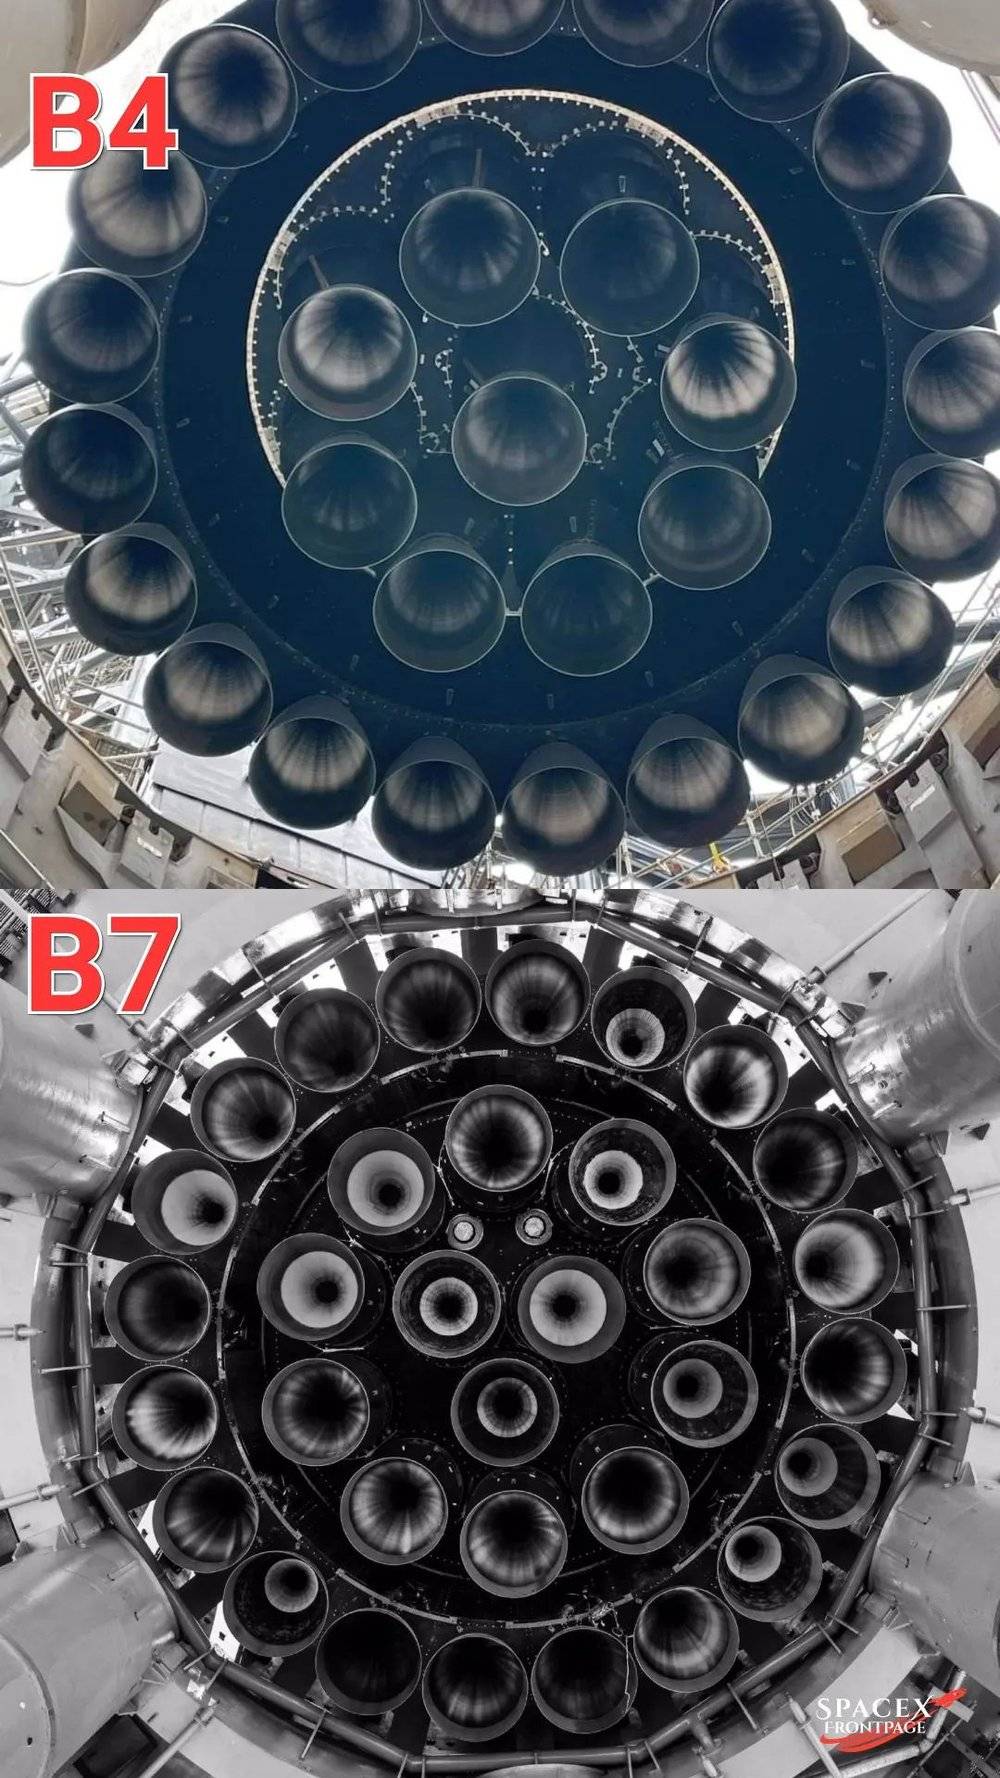 图/星舰芯一级B4和B7发动机布置对比：上为B4，安装有29台猛禽；下为B7，安装有33台猛禽（SpaceX）<br>